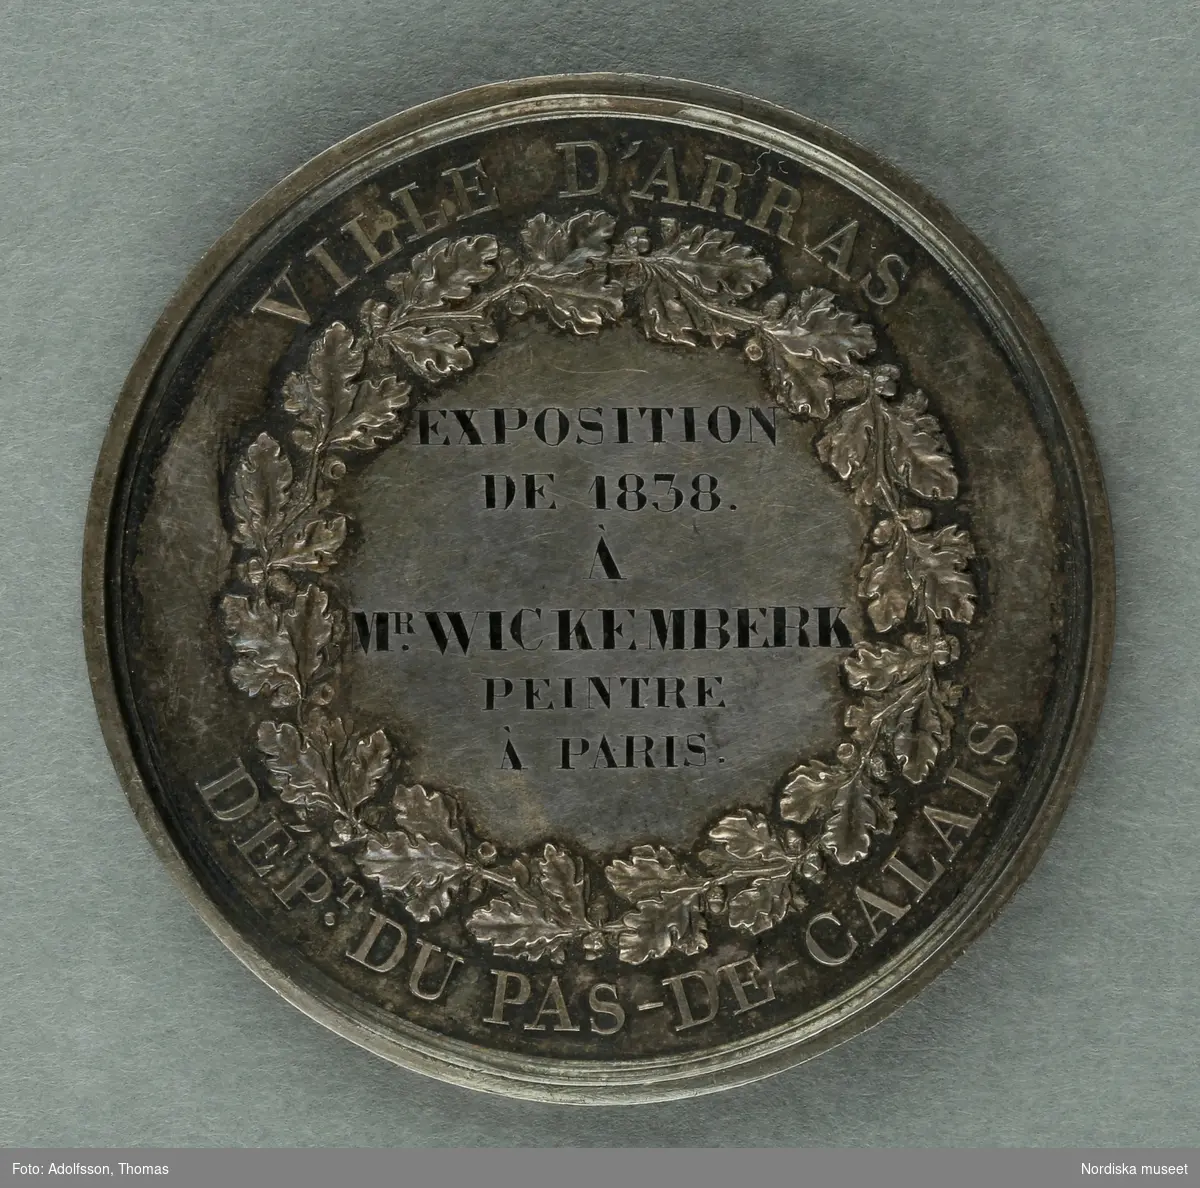 Huvudliggaren.
"Medalj. I hvit metall. Åtsidan: 'Louis Philippe I Roi des francais'. Bröstbild v.o. Under bilden: 'BARRE F.T [t:et snett ovanför F.et]. Frånsidan öfverst: 'Ville d'Arras'. Inom en eklöfskrans: 'Exposition de 1838. A. M [efter m;et svårtytt tecken] Wickemberk peintre à Paris'. Nederst utom kransen: 'Dep .T [t:et ovanför punkten] du Pas-de-Calais.'. 
Diam lin.
G. fr basaren f. Skdin. etn. saml. [=för Skandinaviska etnografiska samlingens] byggnadsfond, gm. fru Olivecrona f. Roos, i apr. 1877."